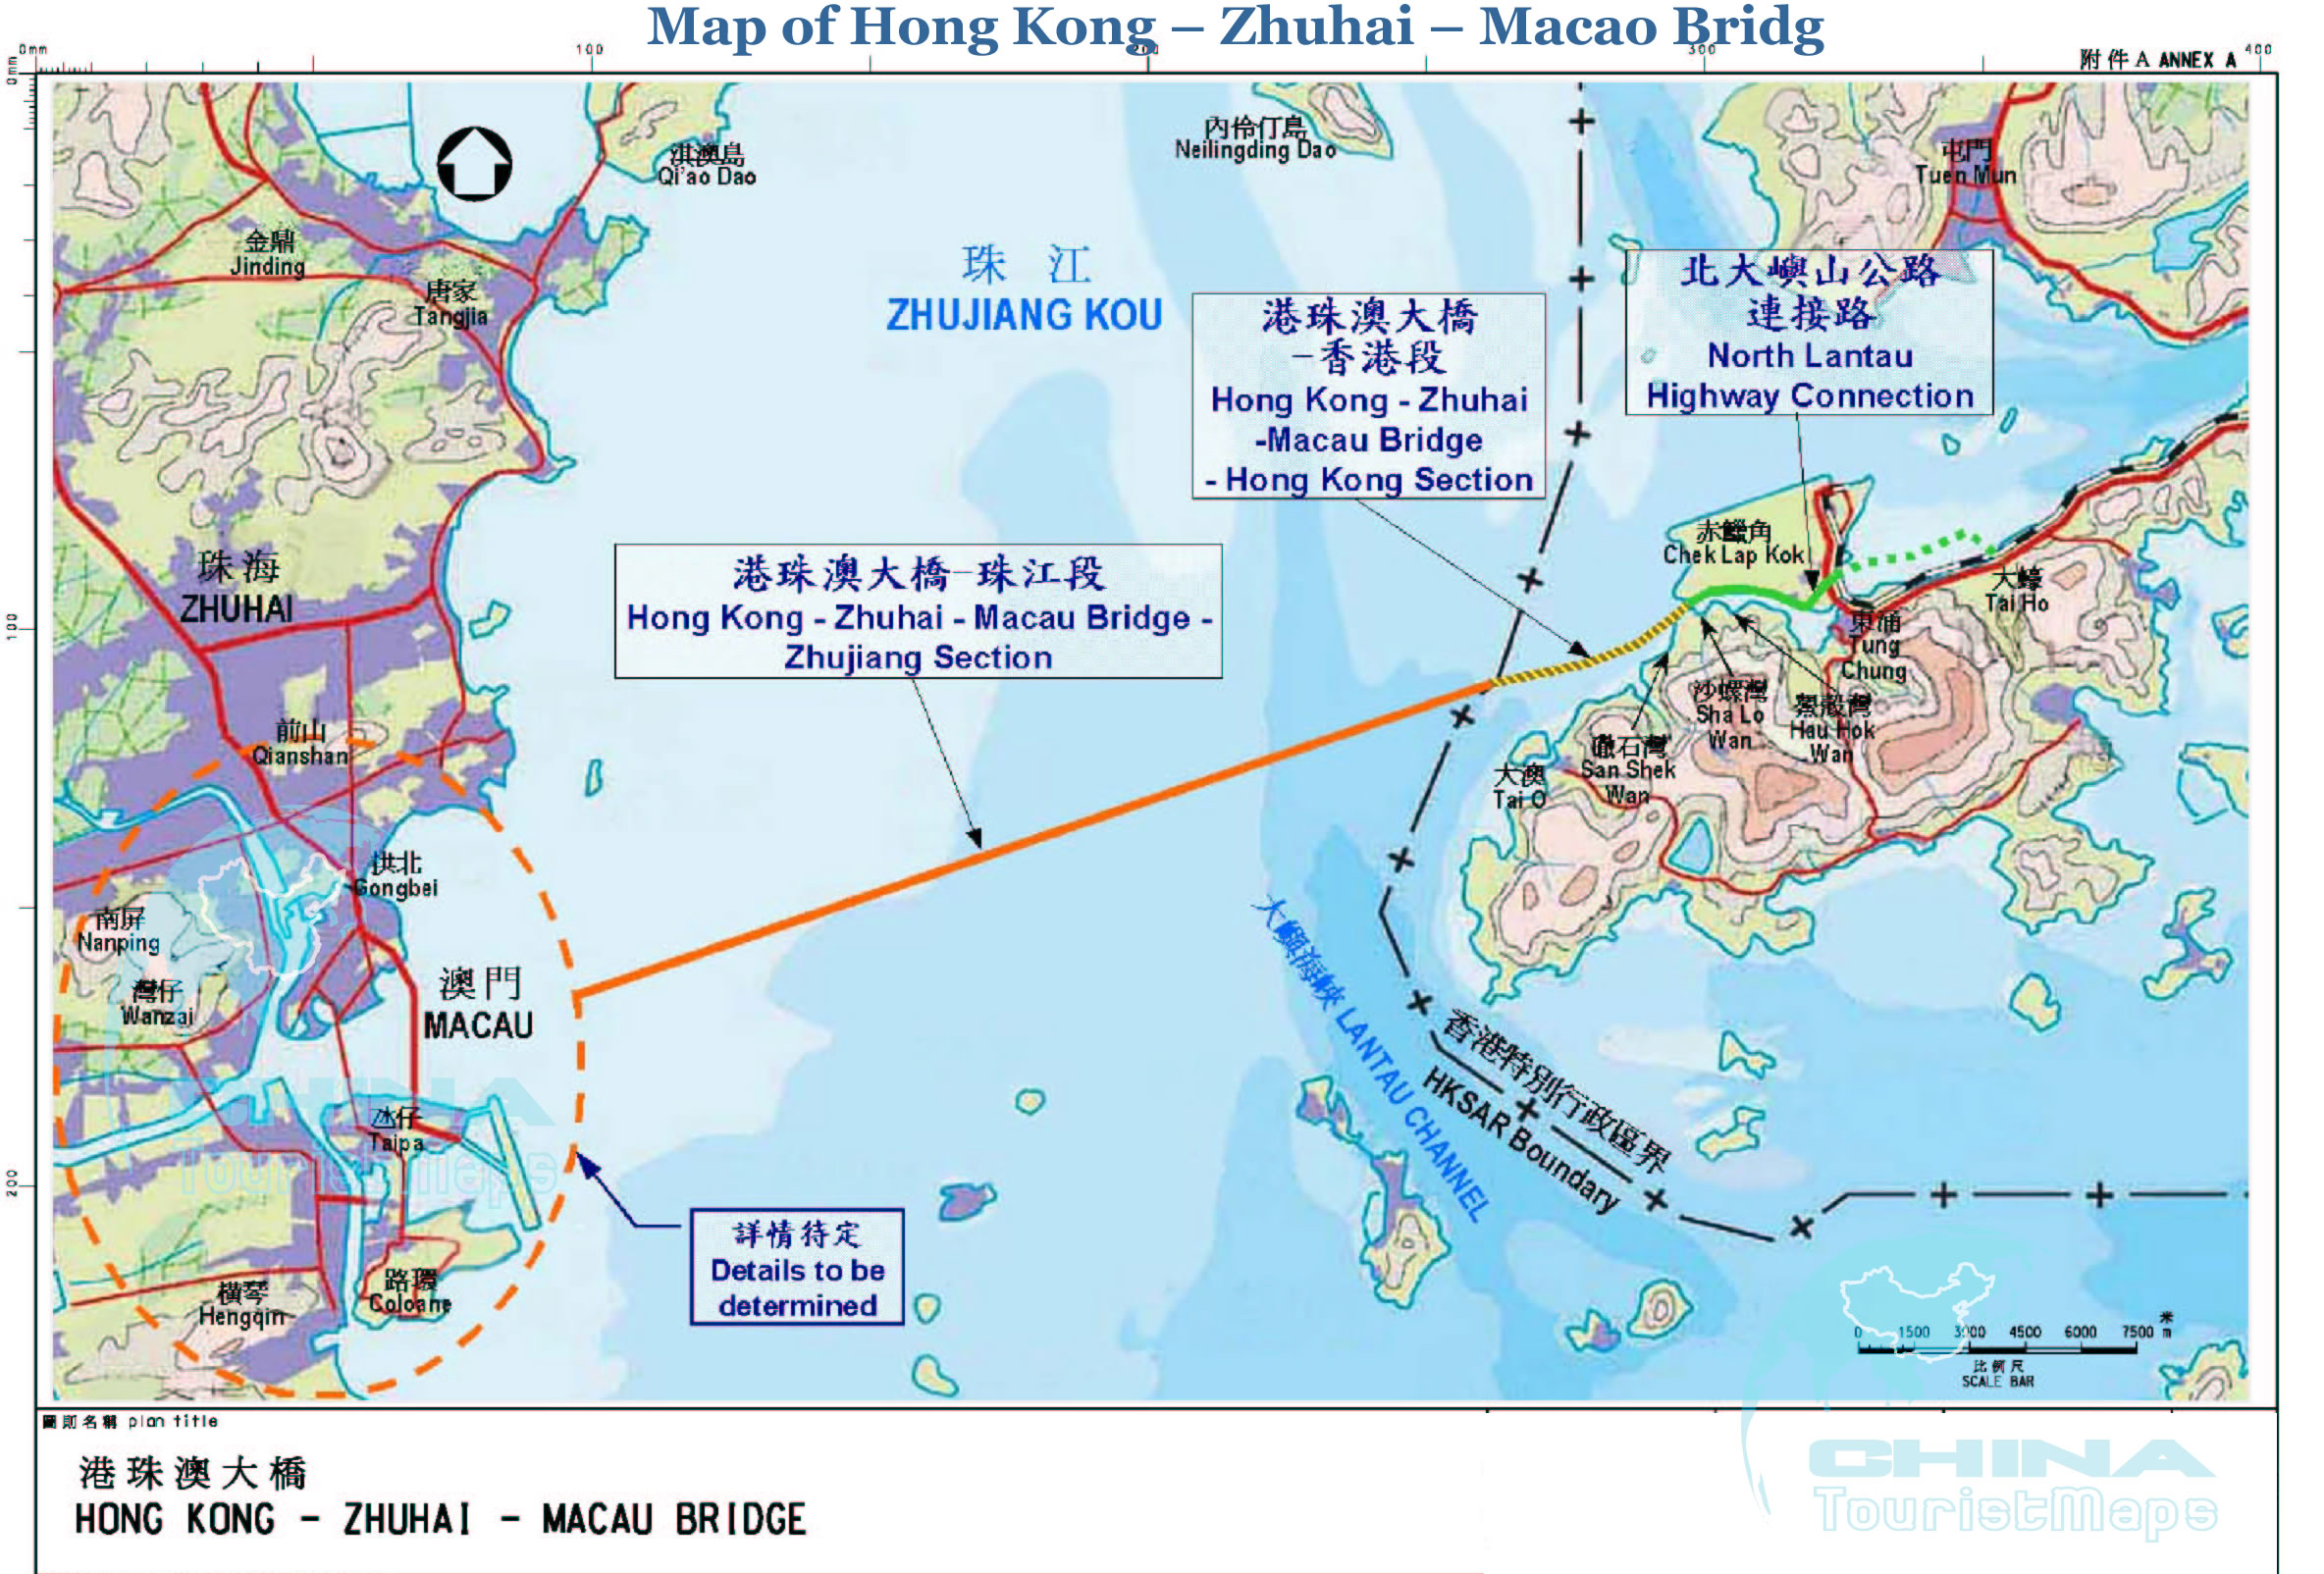 harita hong kong zhuhai macau kopru b